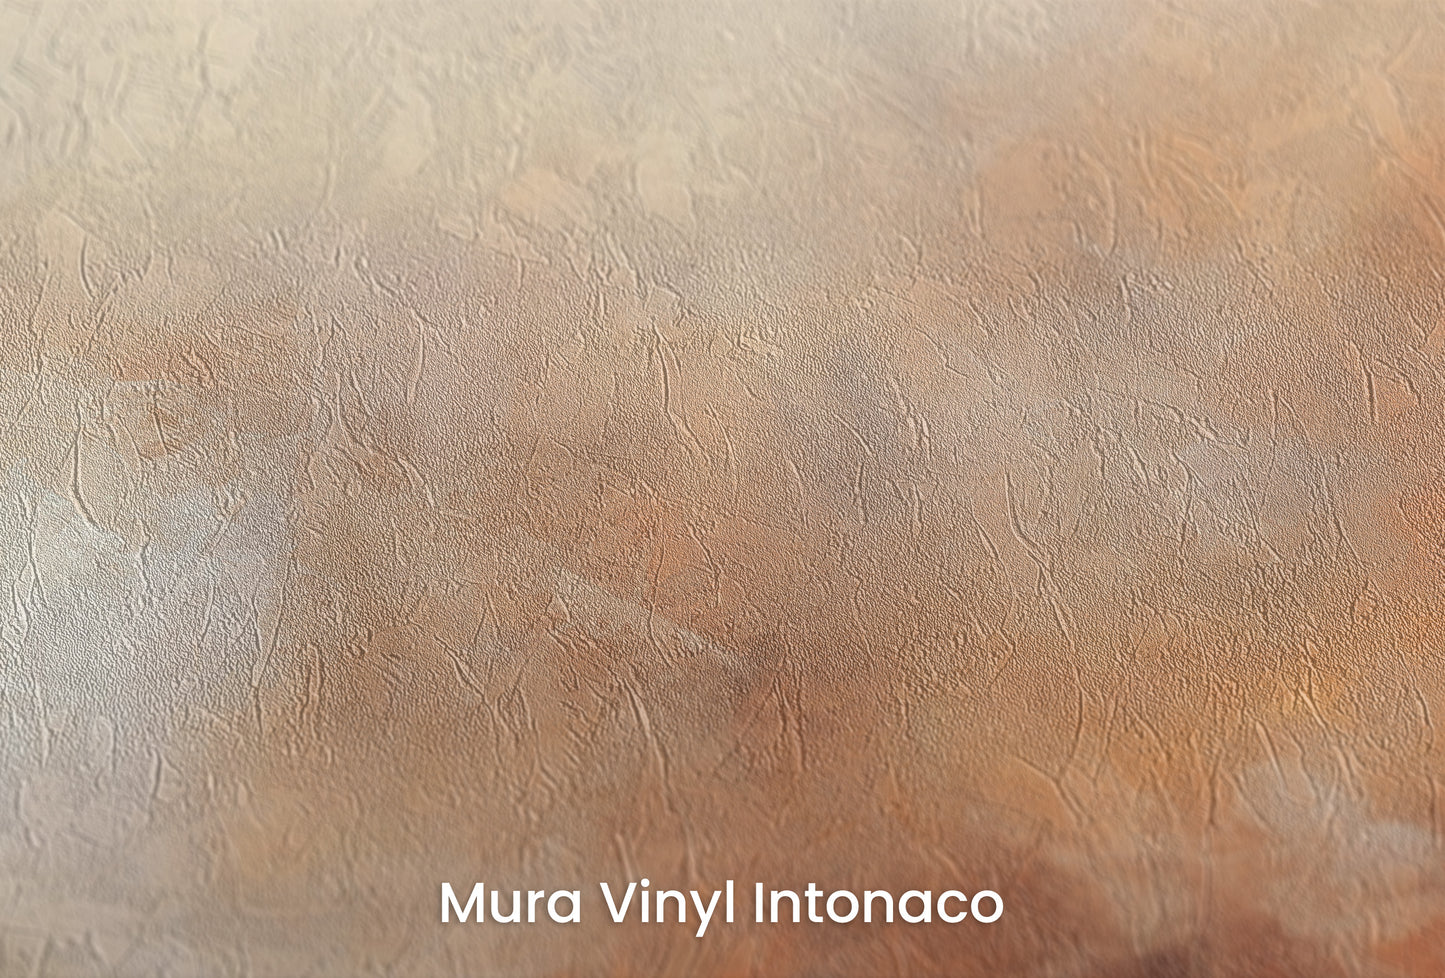 Zbliżenie na artystyczną fototapetę o nazwie DUSK RADIANCE ABSTRACT na podłożu Mura Vinyl Intonaco - struktura tartego tynku.